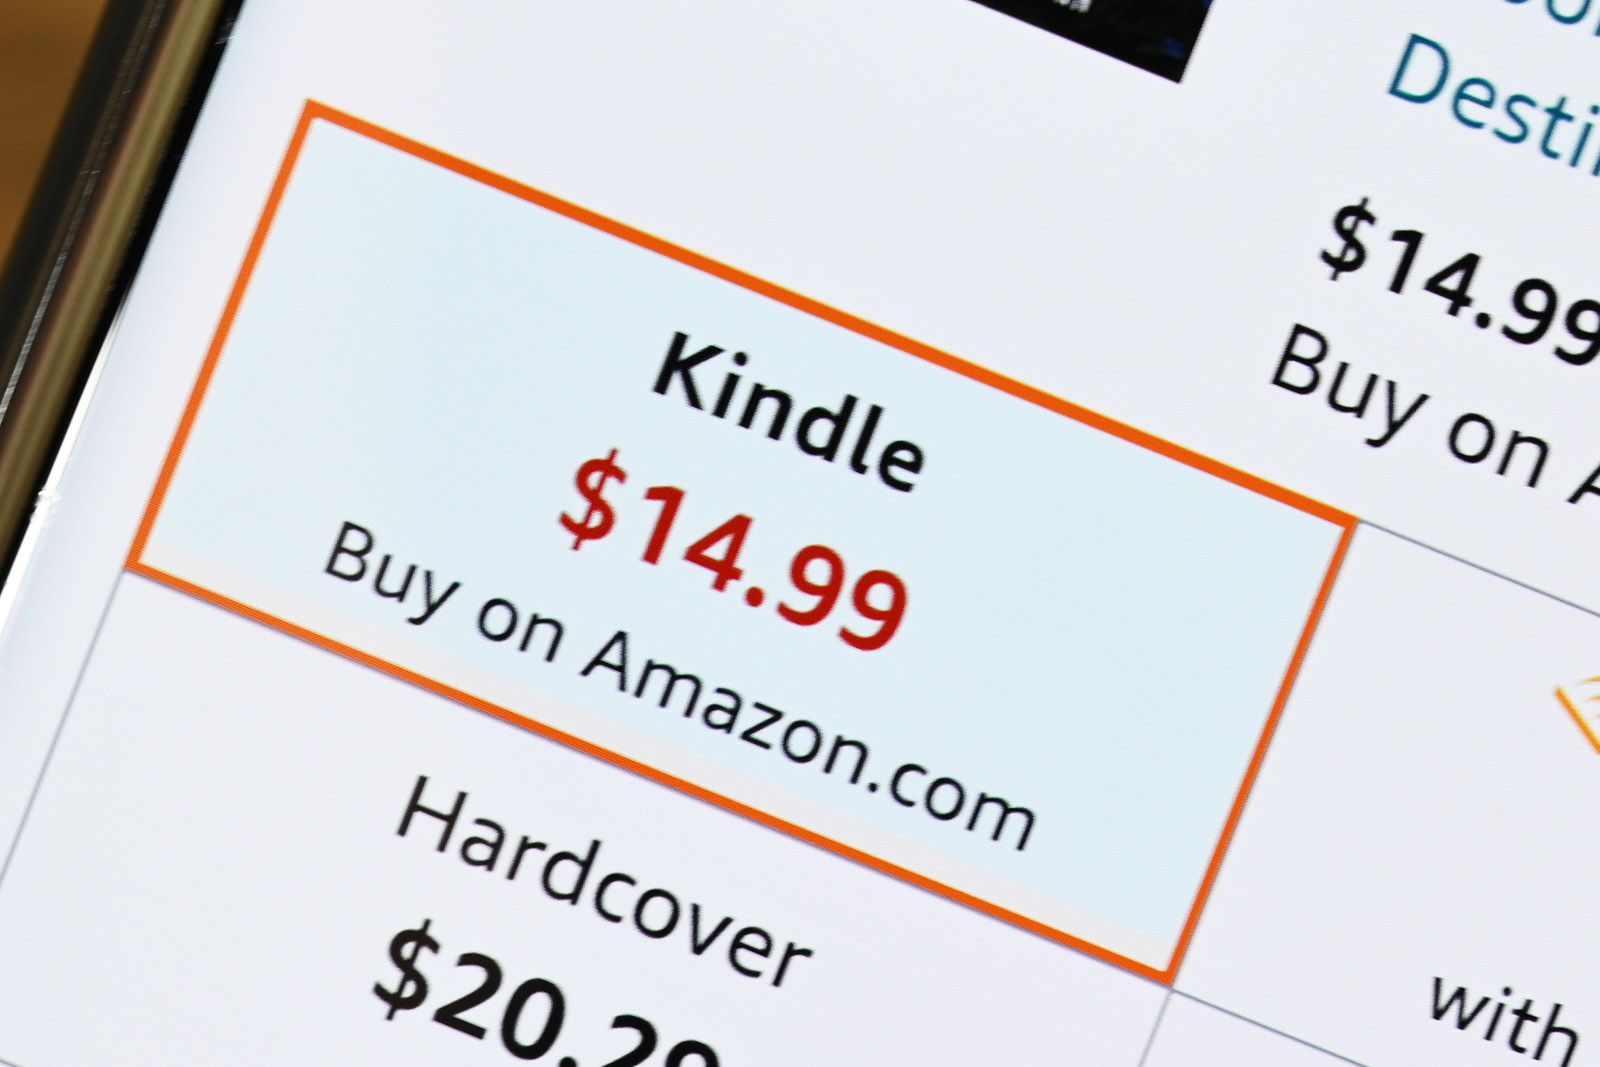 Amazon Kindle Book on Mobile